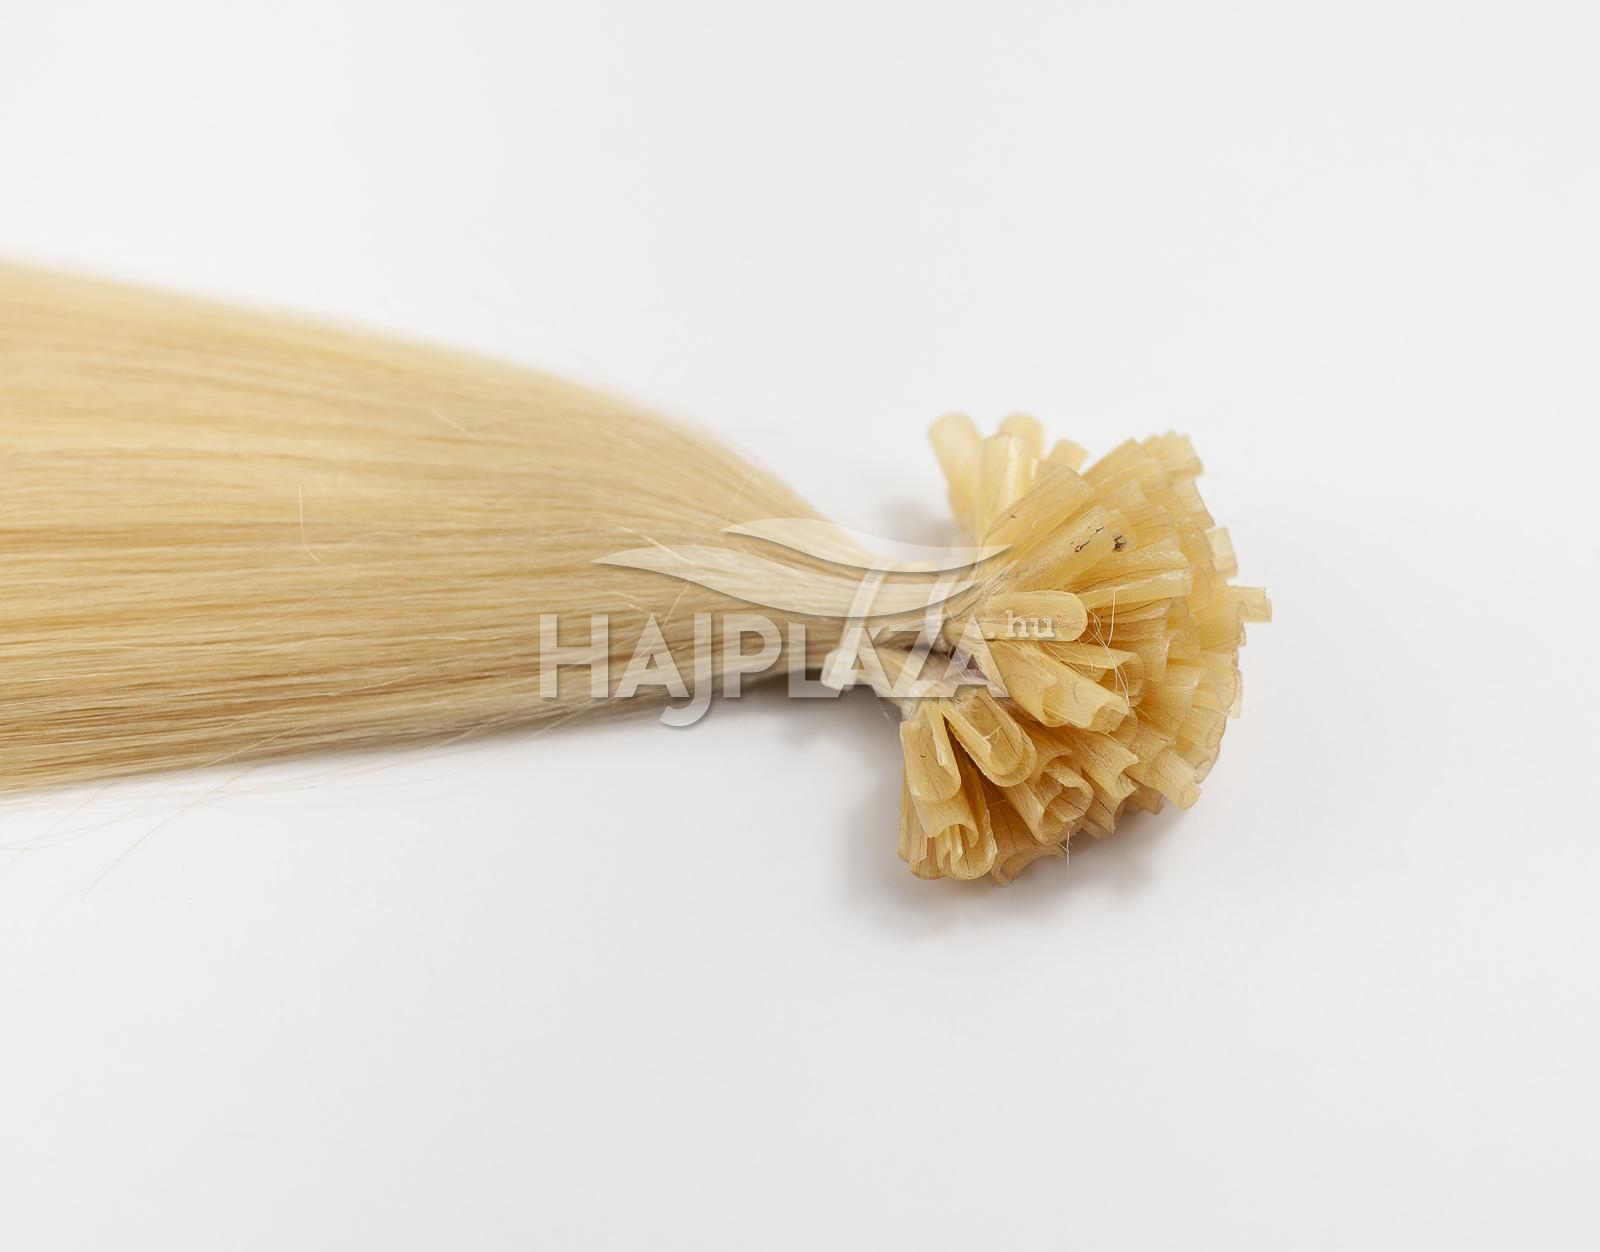 Festett világosszőke keratinos haj - 40-45 cm